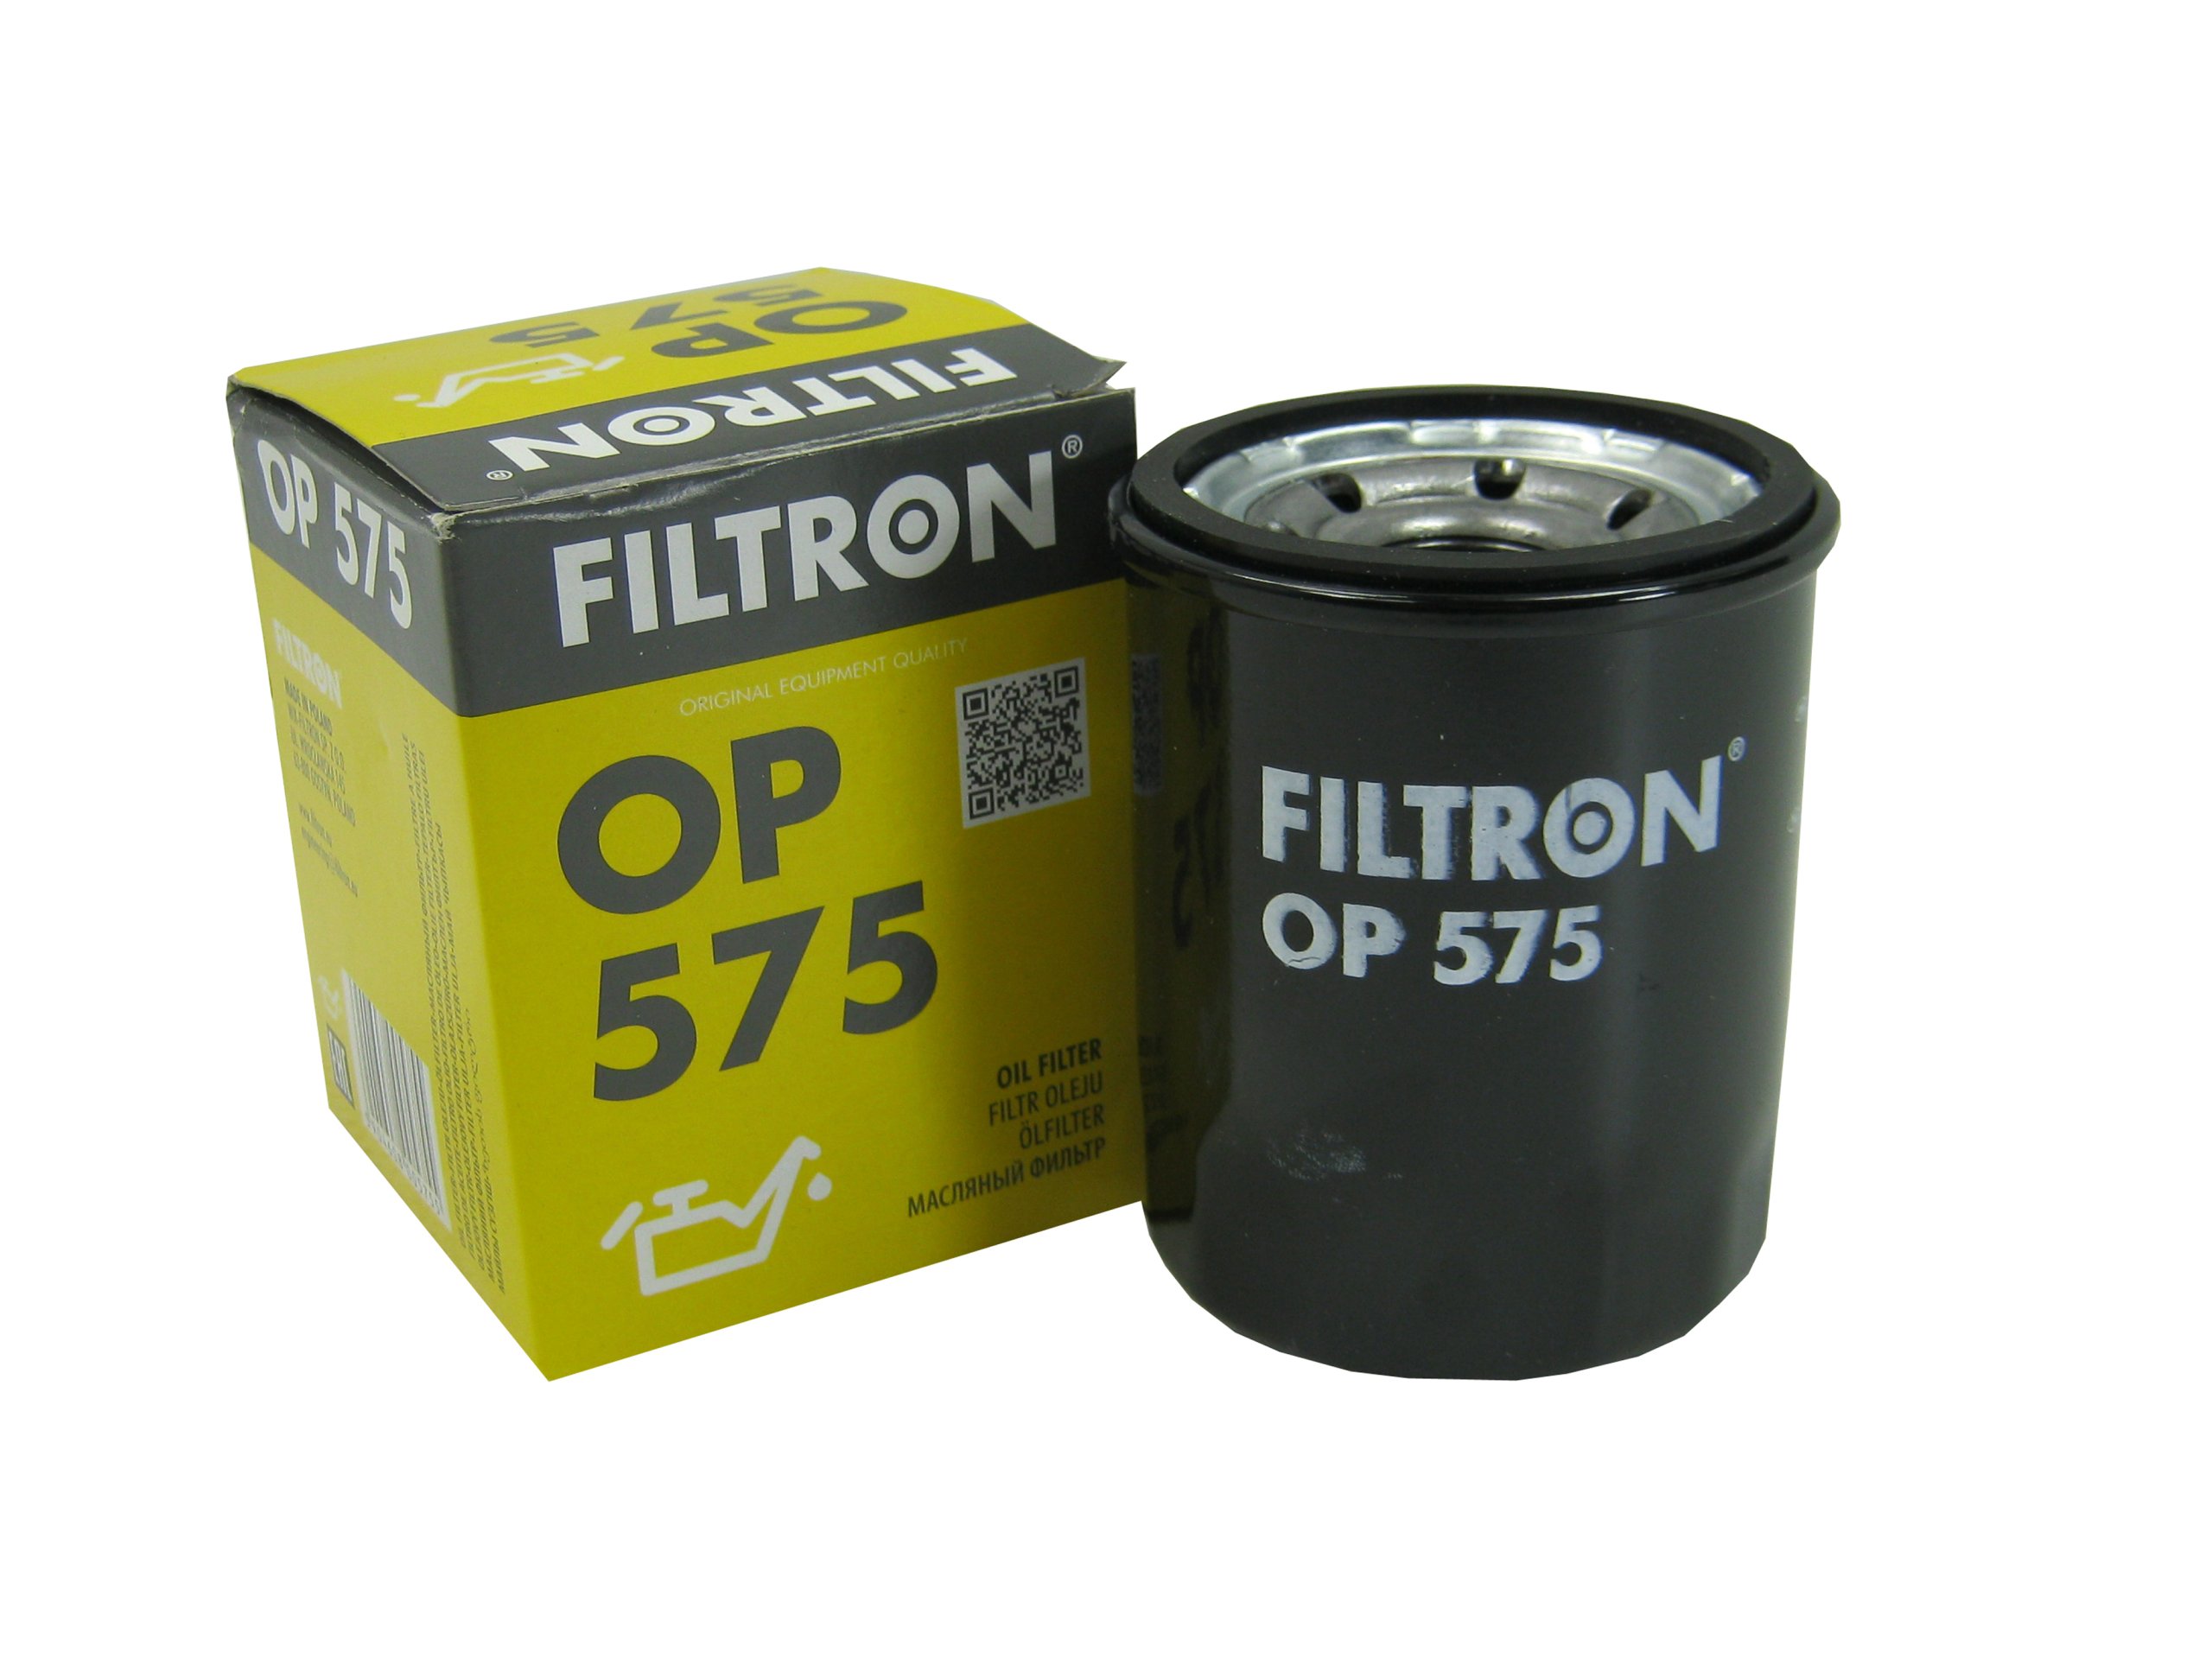 Масло фильтр отзывы. Фильтр масляный FILTRON op575. Op 575 фильтр масляный. Фильтр масляный на Ниссан Фильтрон. Фильтр масляный Ниссан Альмера 1.6 2018 Фильтрон.